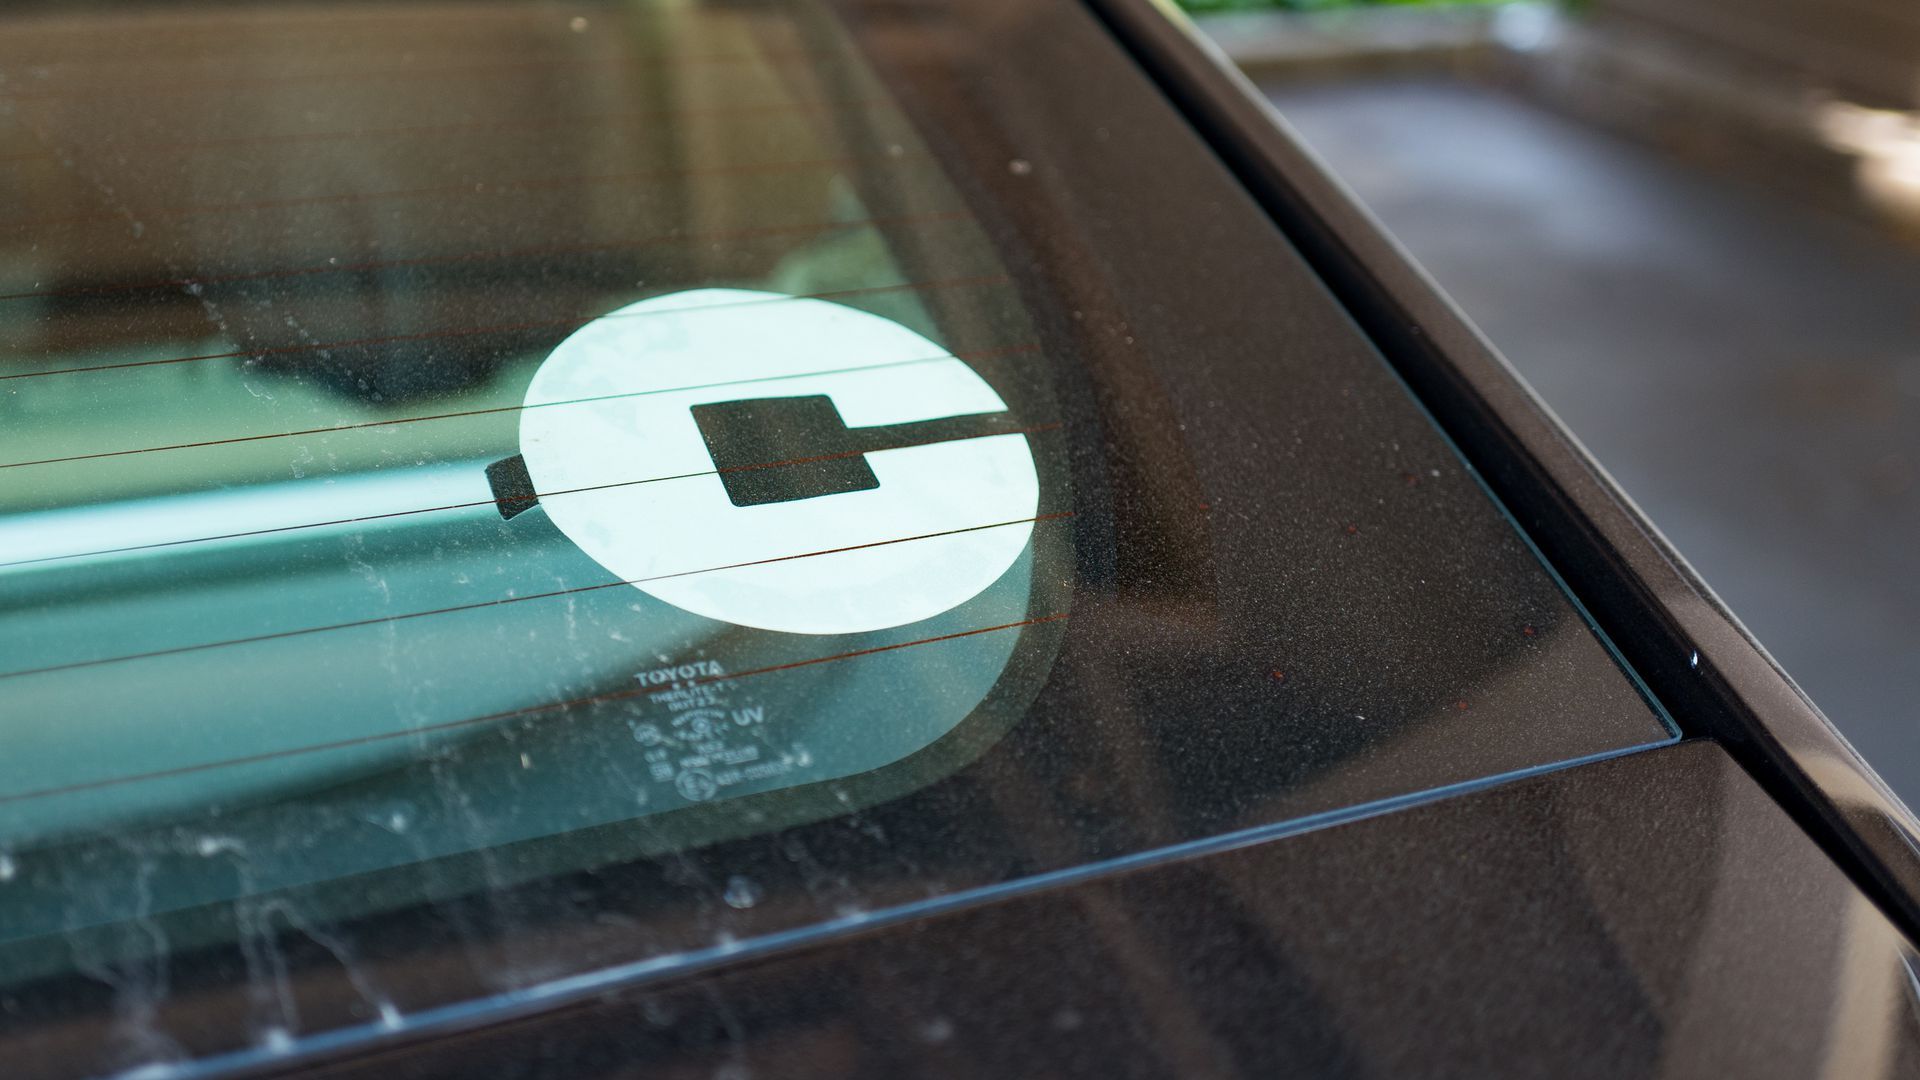 An Uber logo on a car